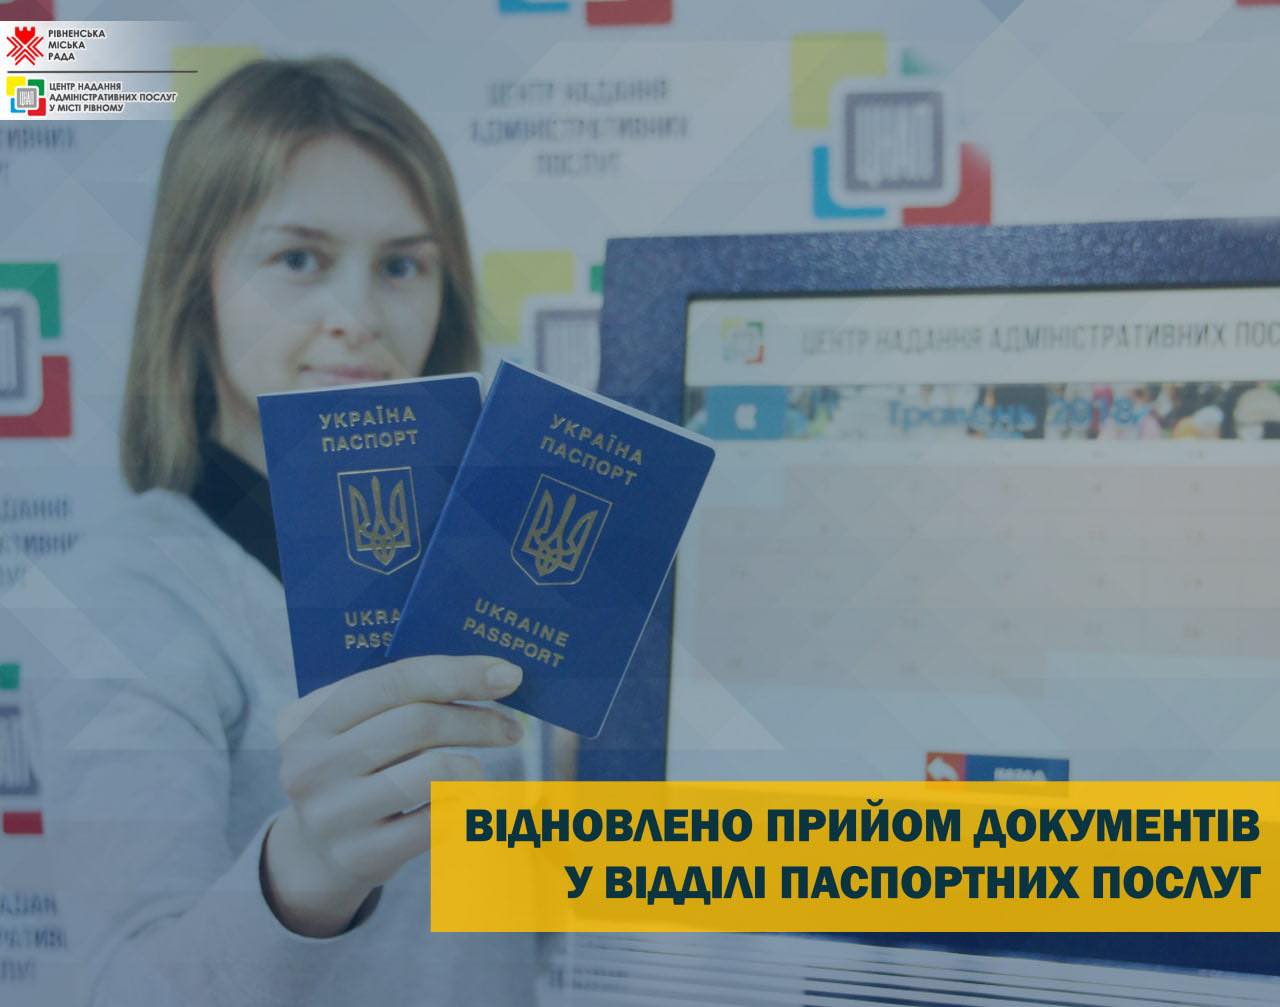 Рівненський ЦНАП знову приймає документи у відділі паспортних послуг